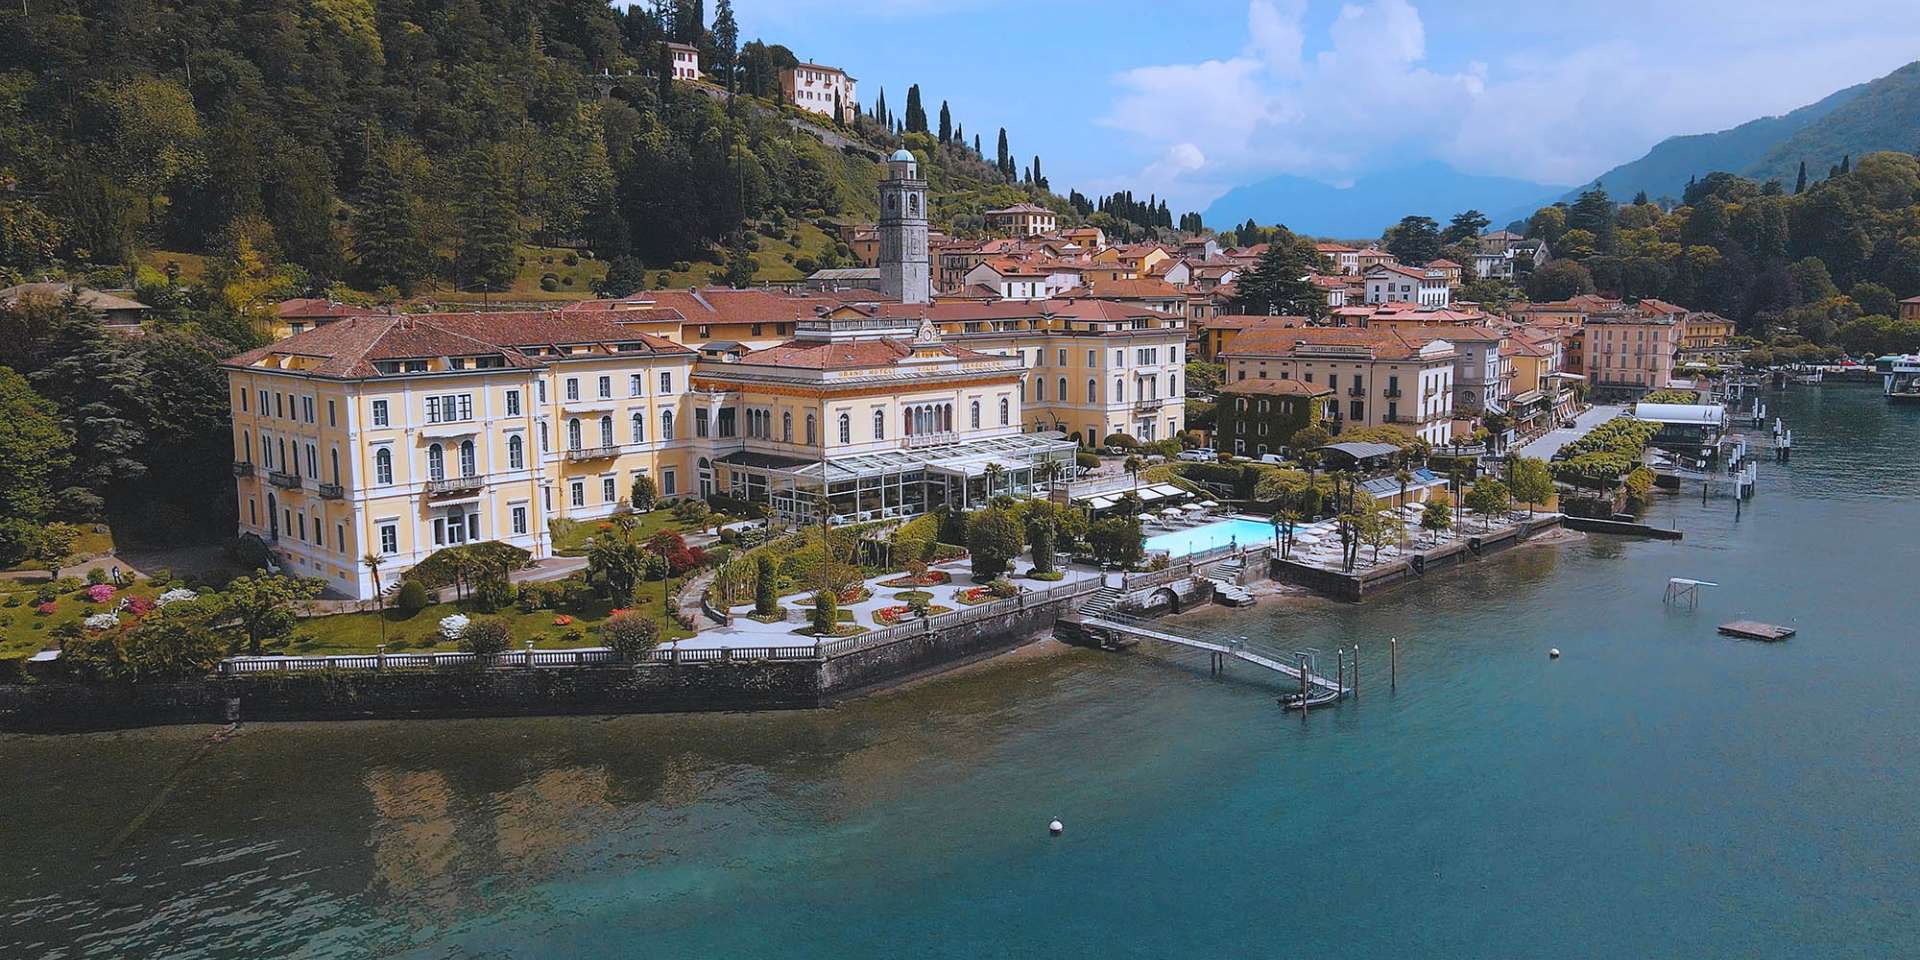 Grand Hotel Villa Serbelloni Panoramic View web